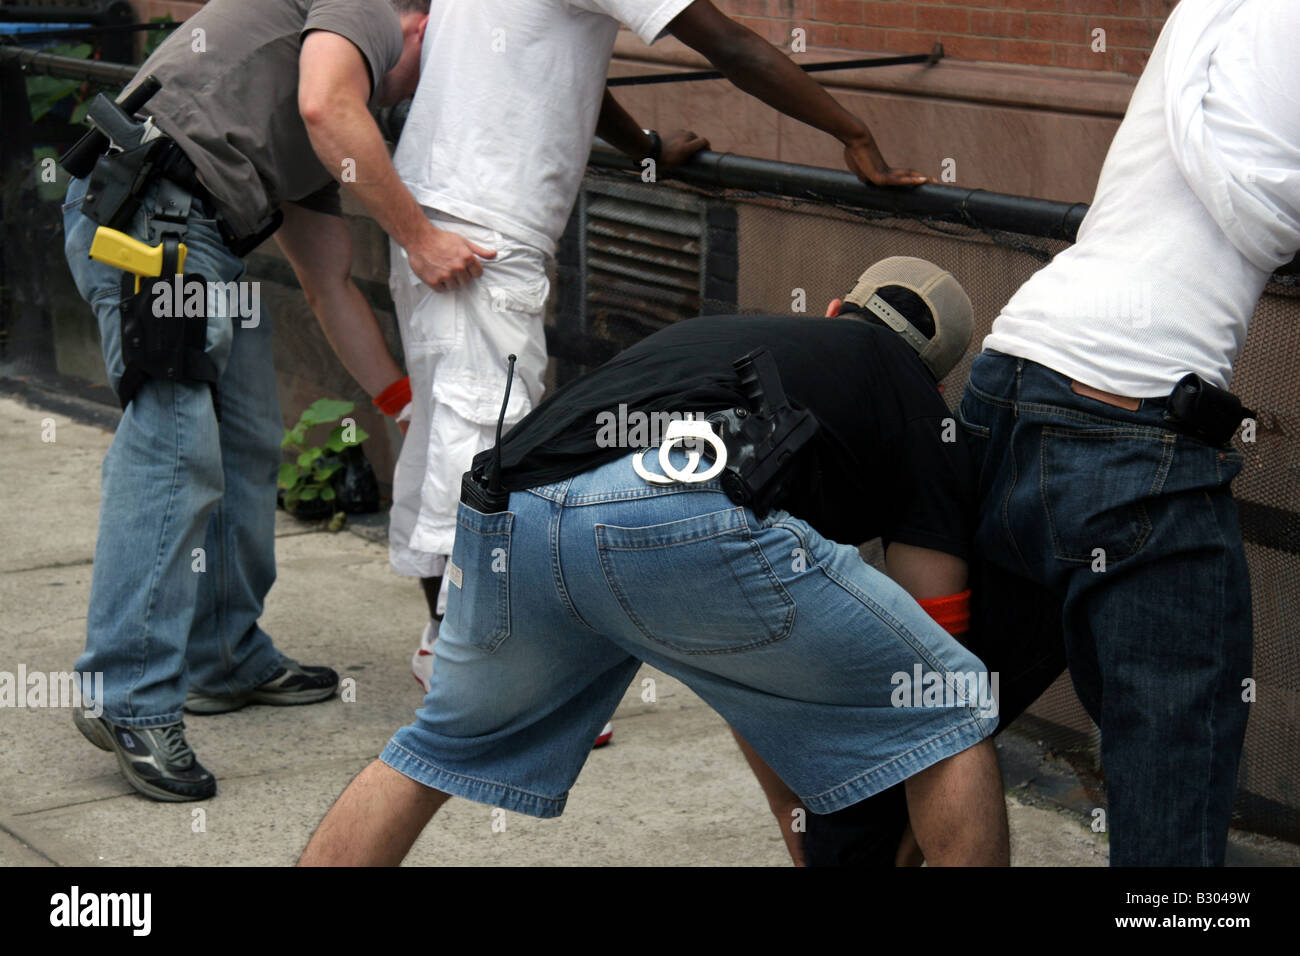 Des détectives en civil contre la criminalité fouillant des suspects à Harlem New York Banque D'Images